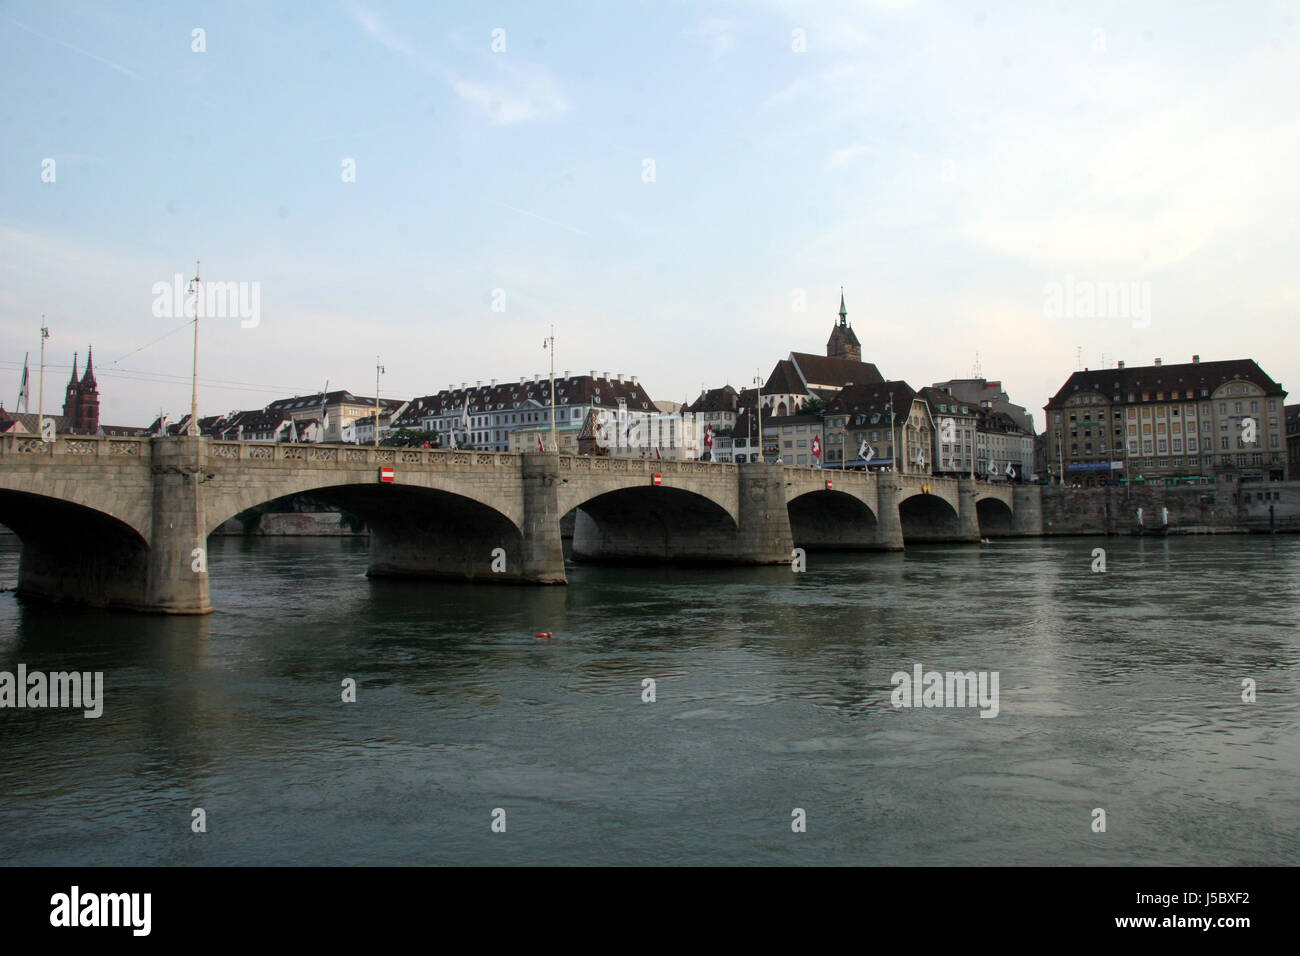 Stadt Brücke Rhein Schweiz Hafenstadt Stadtbild Häfen anzeigen Basel Stockfoto